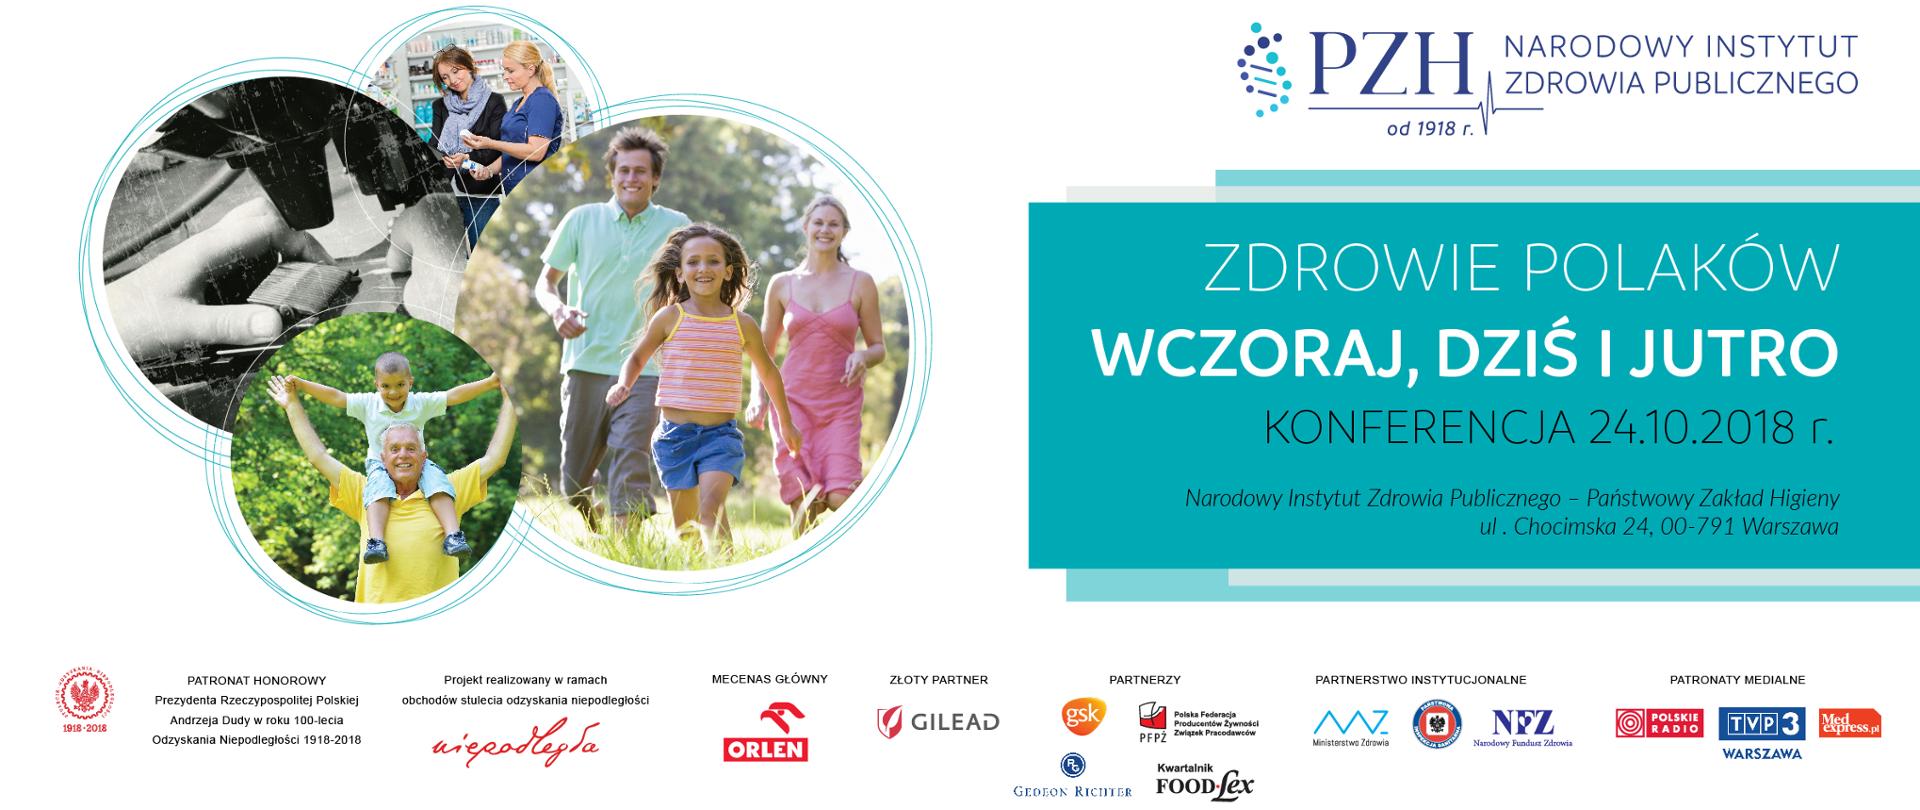 Zdrowie Polaków Wczoraj, Dziś i Jutro